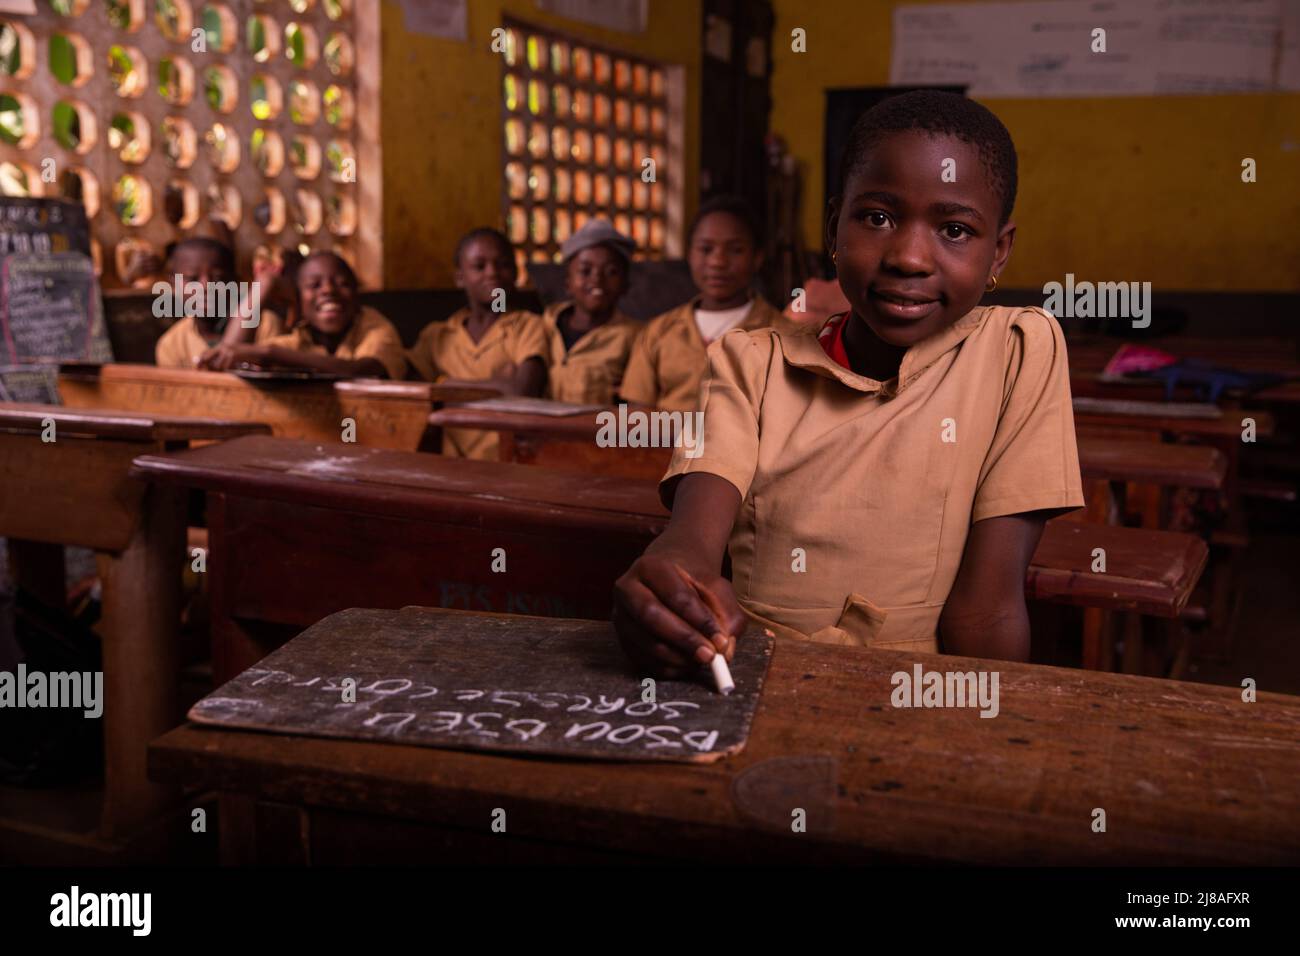 Dans une salle de classe africaine pleine d'enfants noirs désireux d'apprendre. Concept d'apprentissage. Banque D'Images